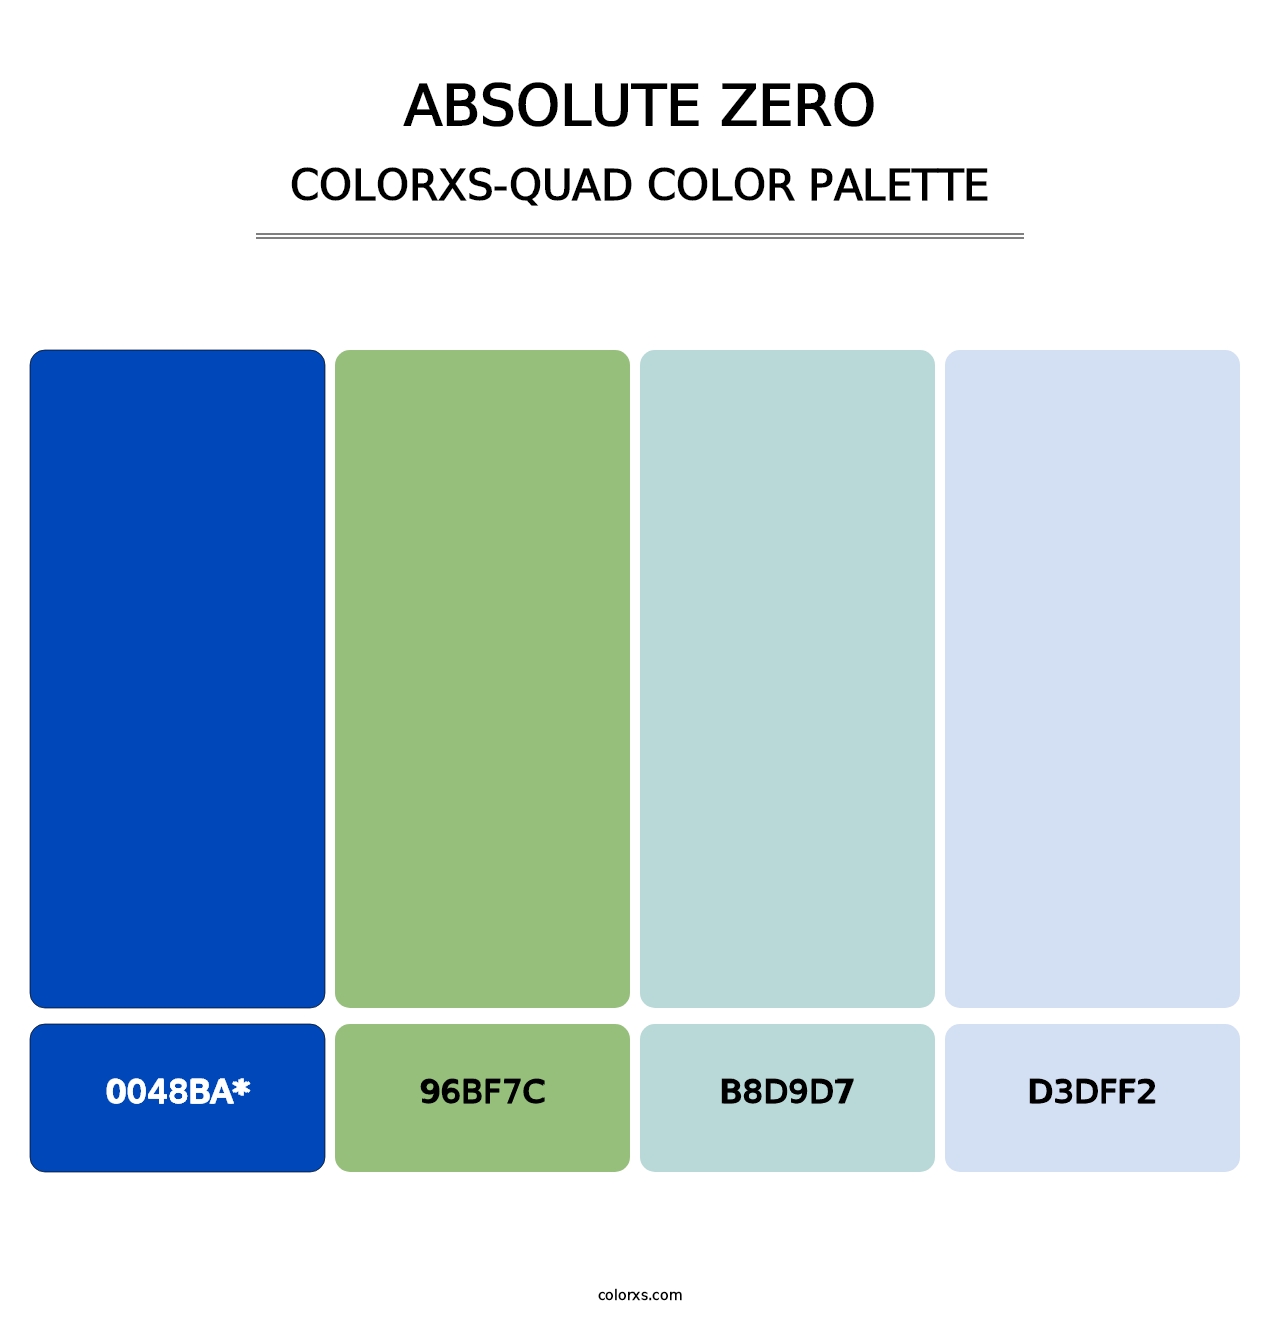 Absolute Zero - Colorxs Quad Palette